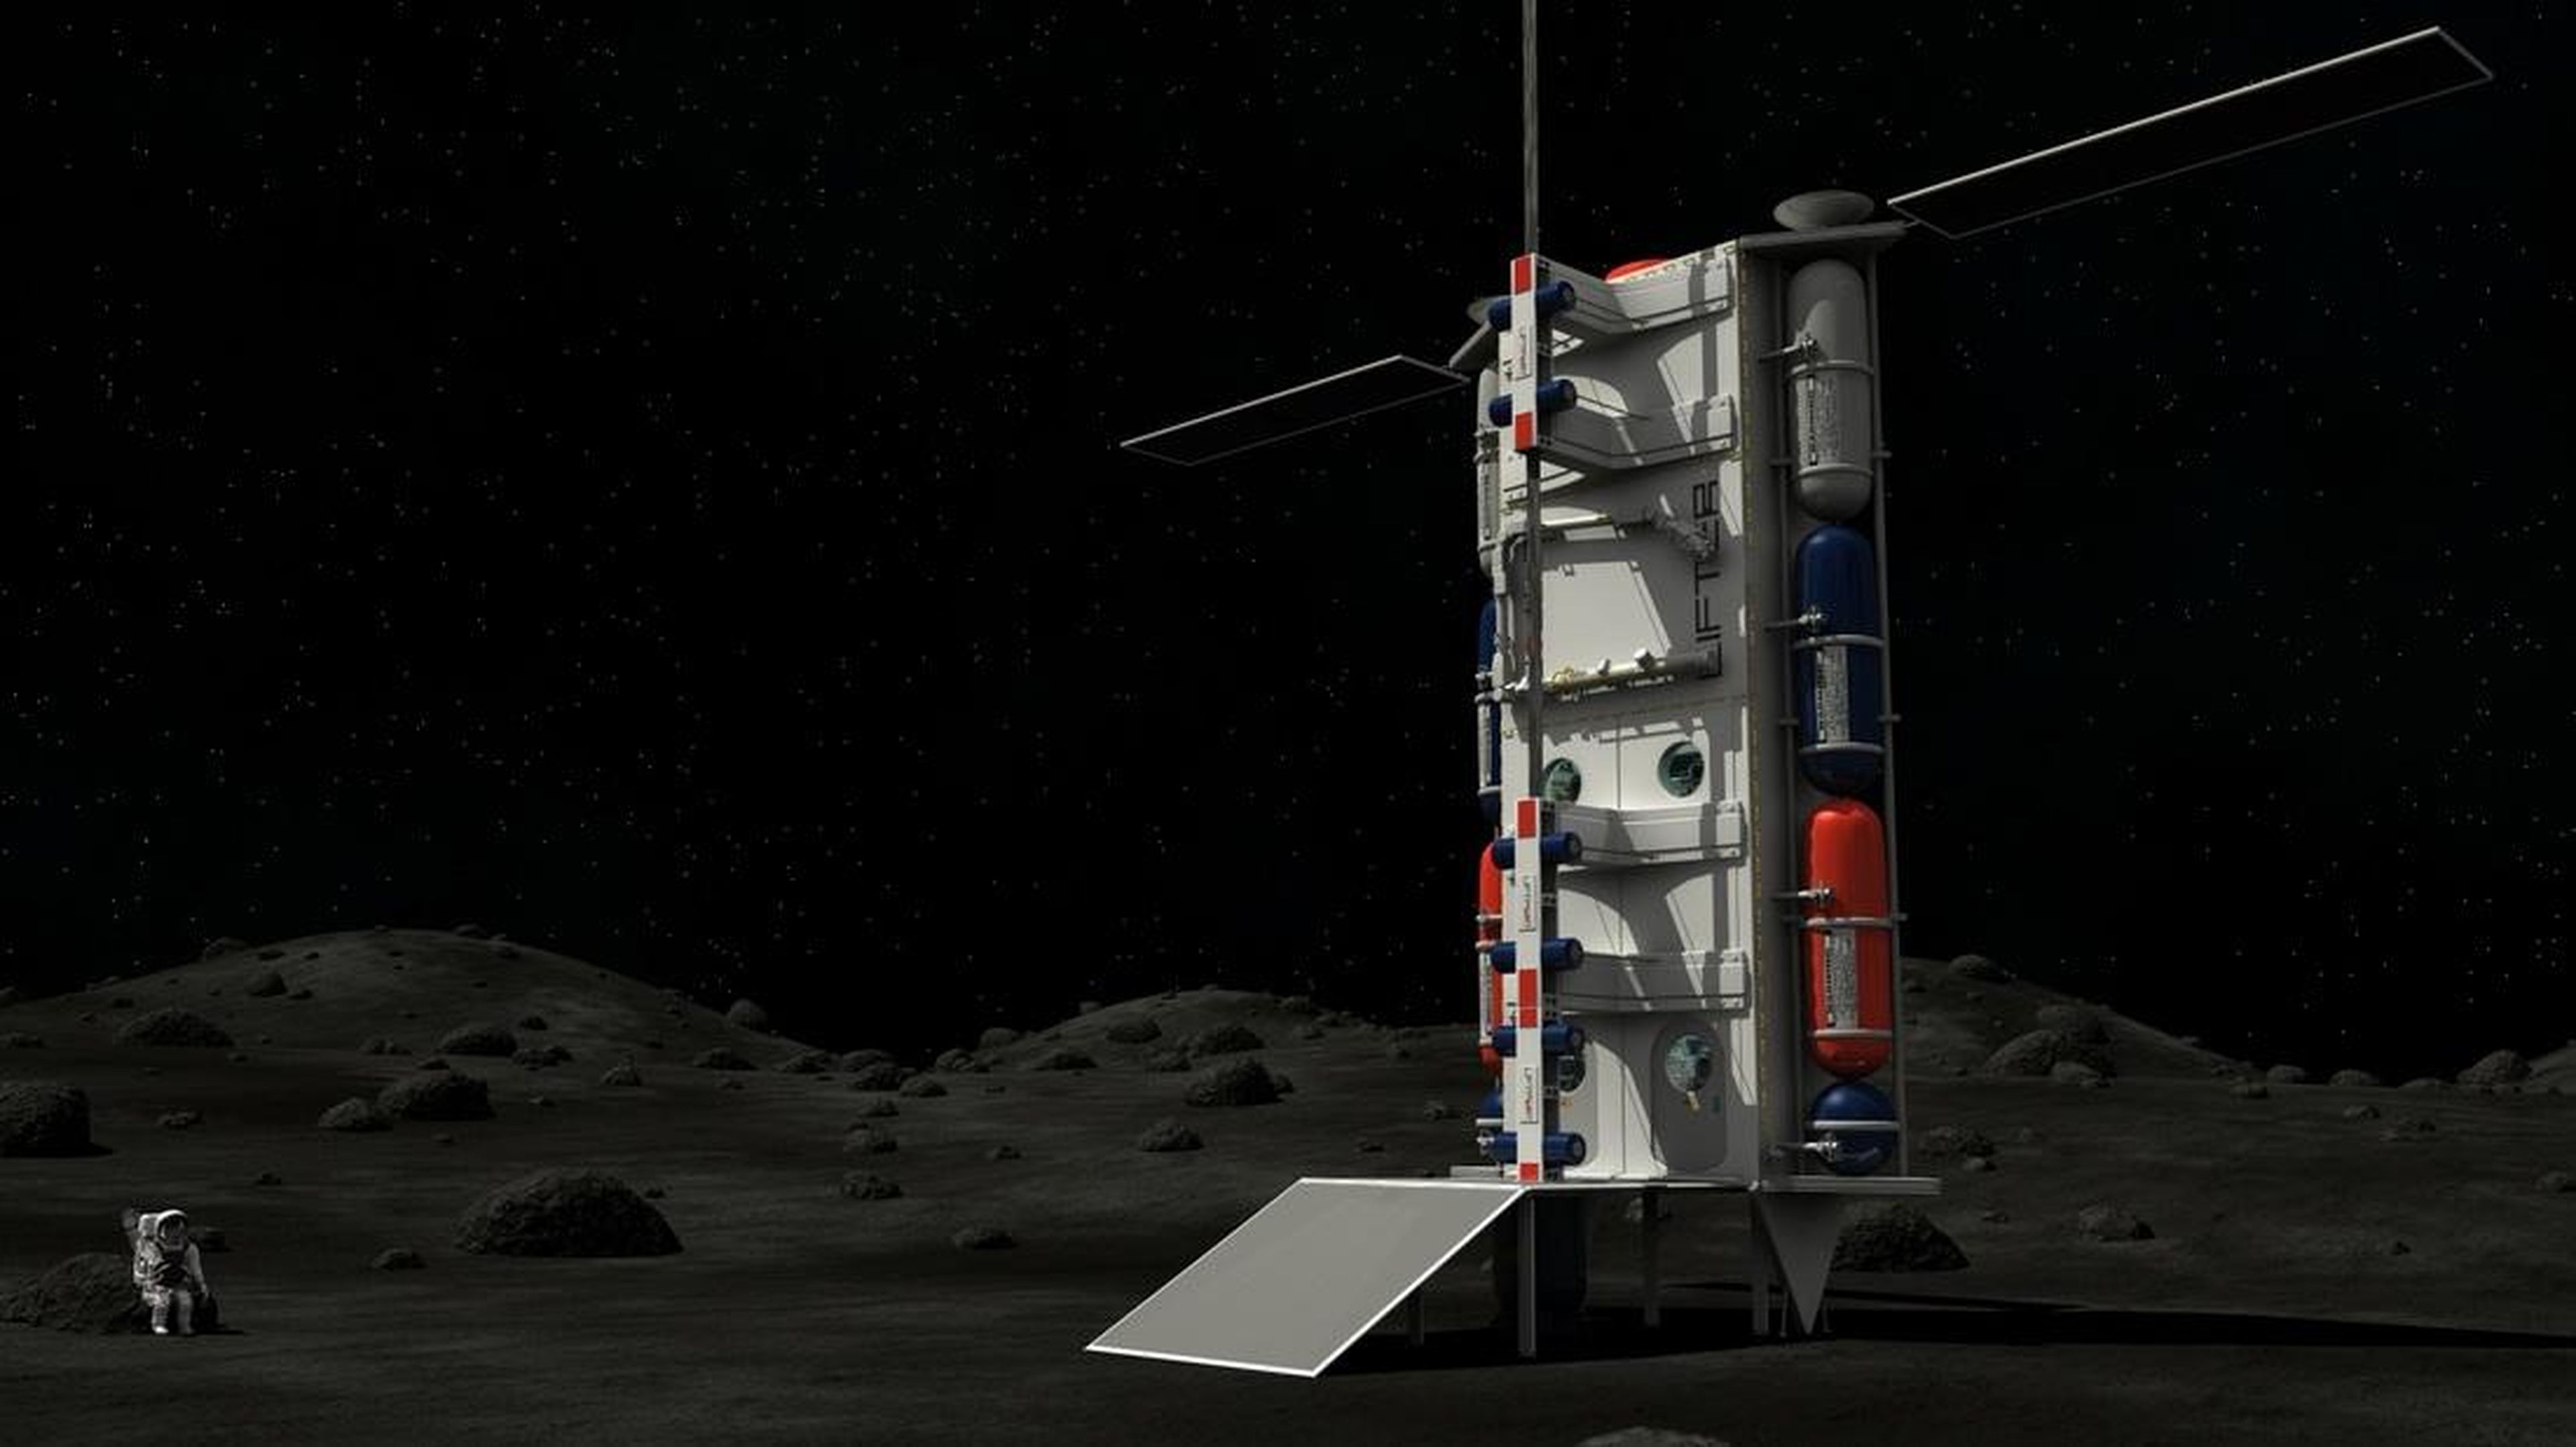 La representación de un artista de un ascensor espacial sobre la superficie lunar.